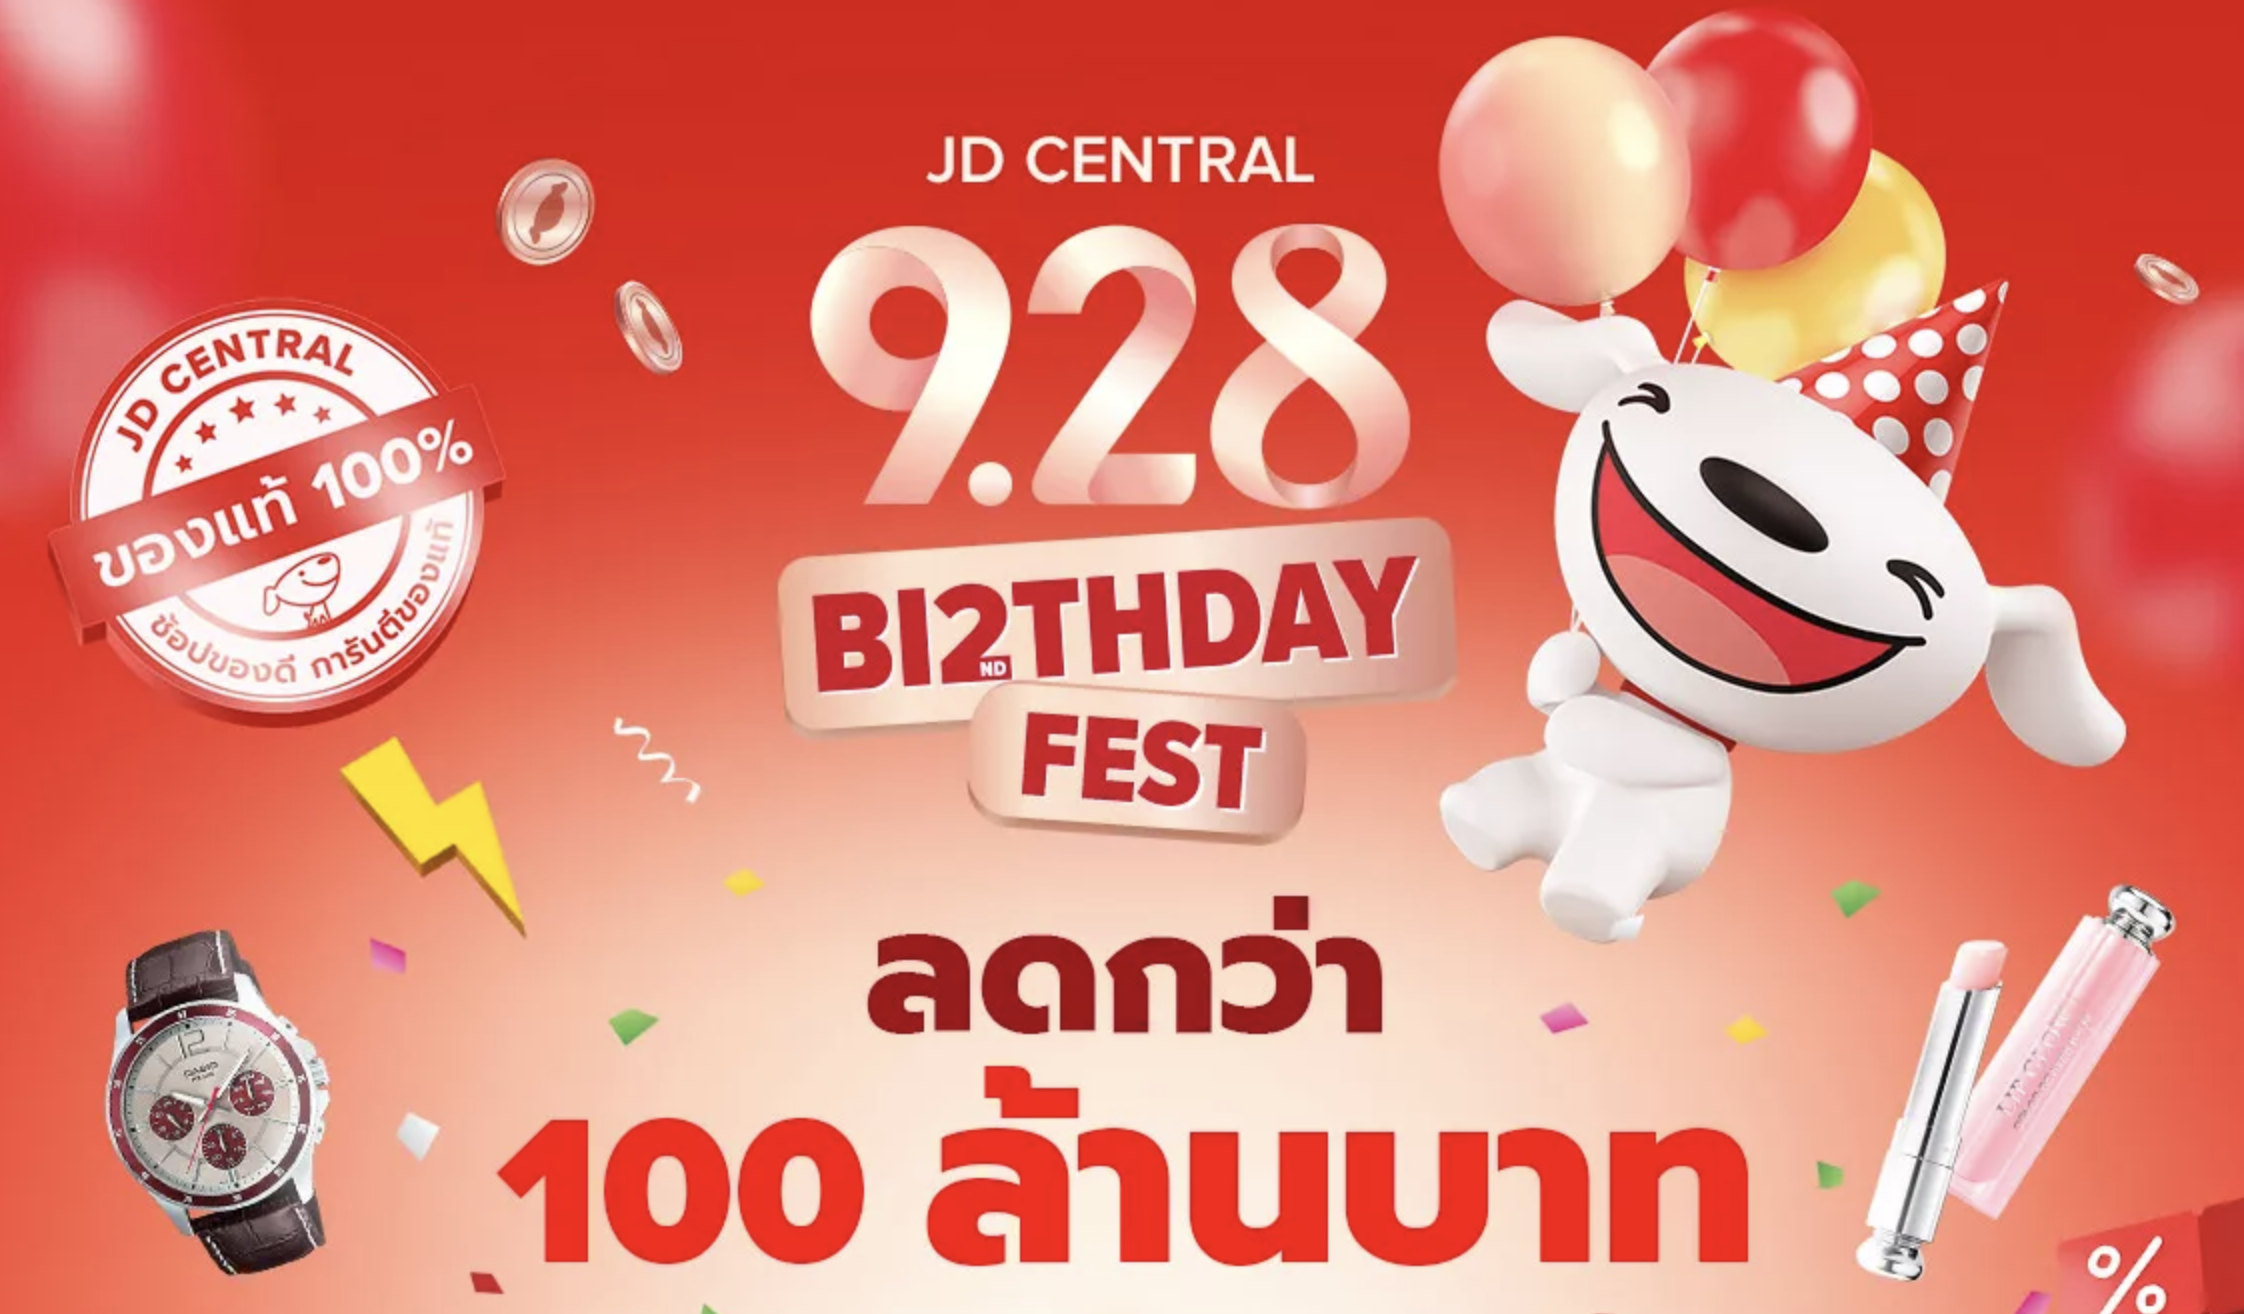 JD Central logo